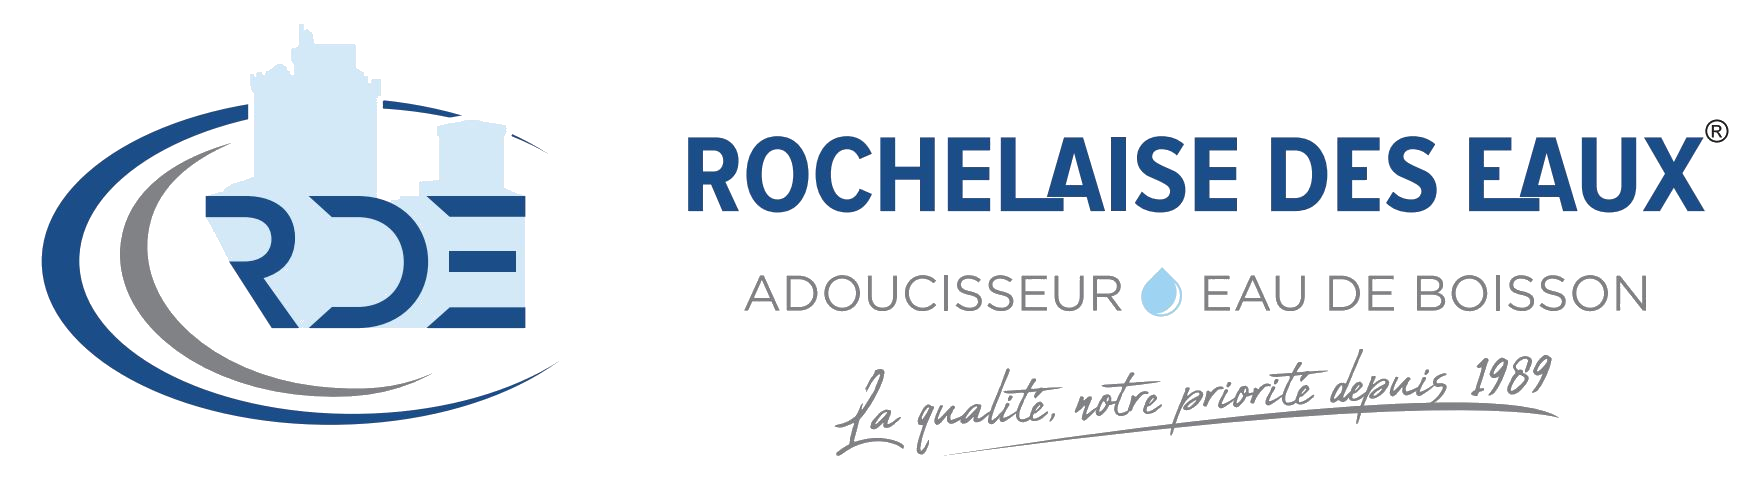 Adoucisseur d'eau La Rochelle - Osmoseur Luçon